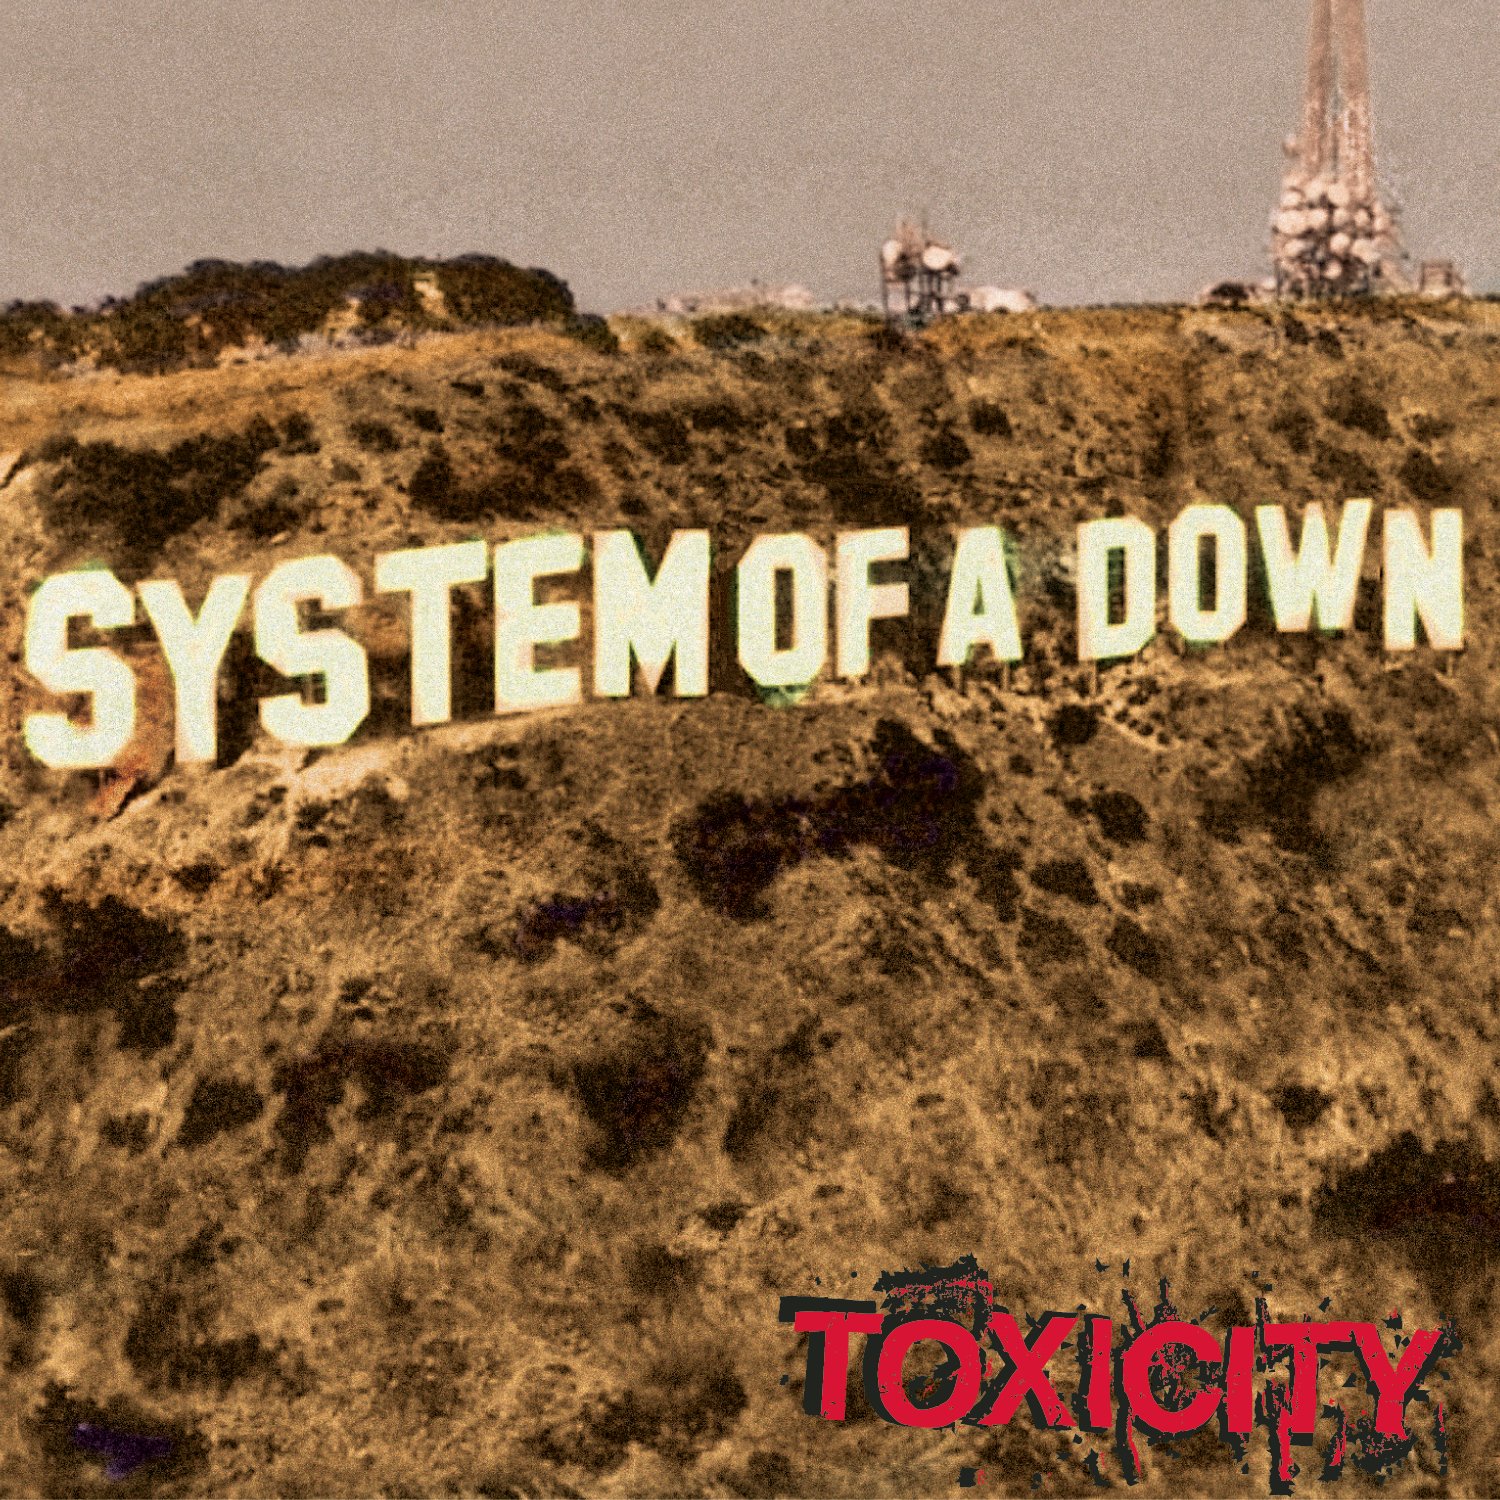 La historia del significado y la evolución de "Chop Suey" de System Of A Down